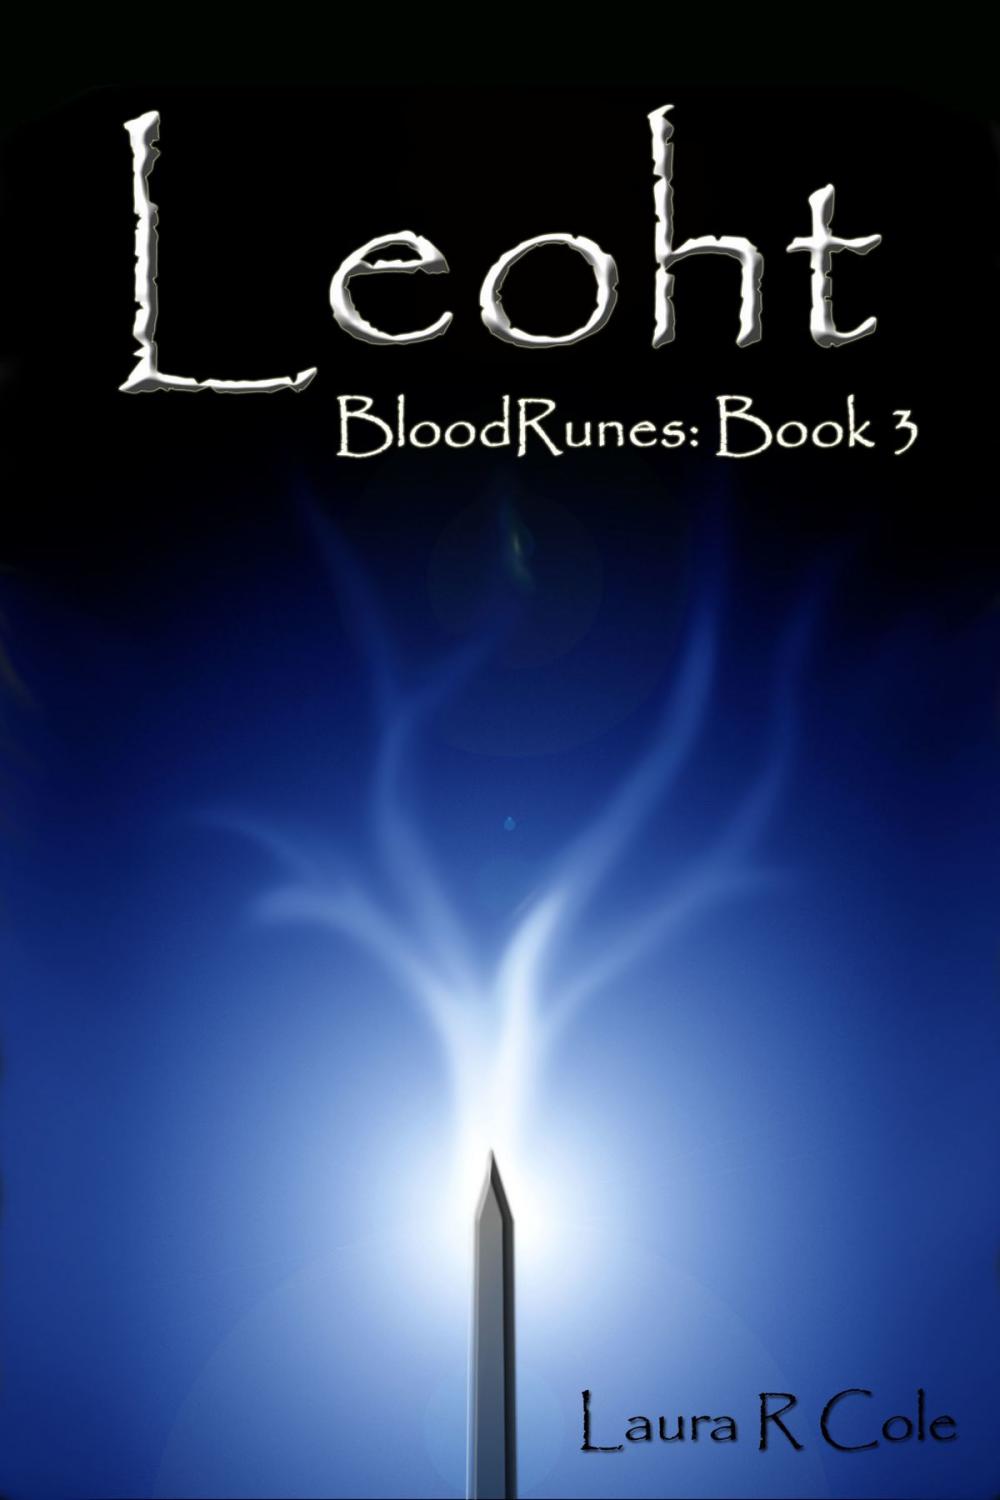 Big bigCover of Leoht (BloodRunes: Book 3)